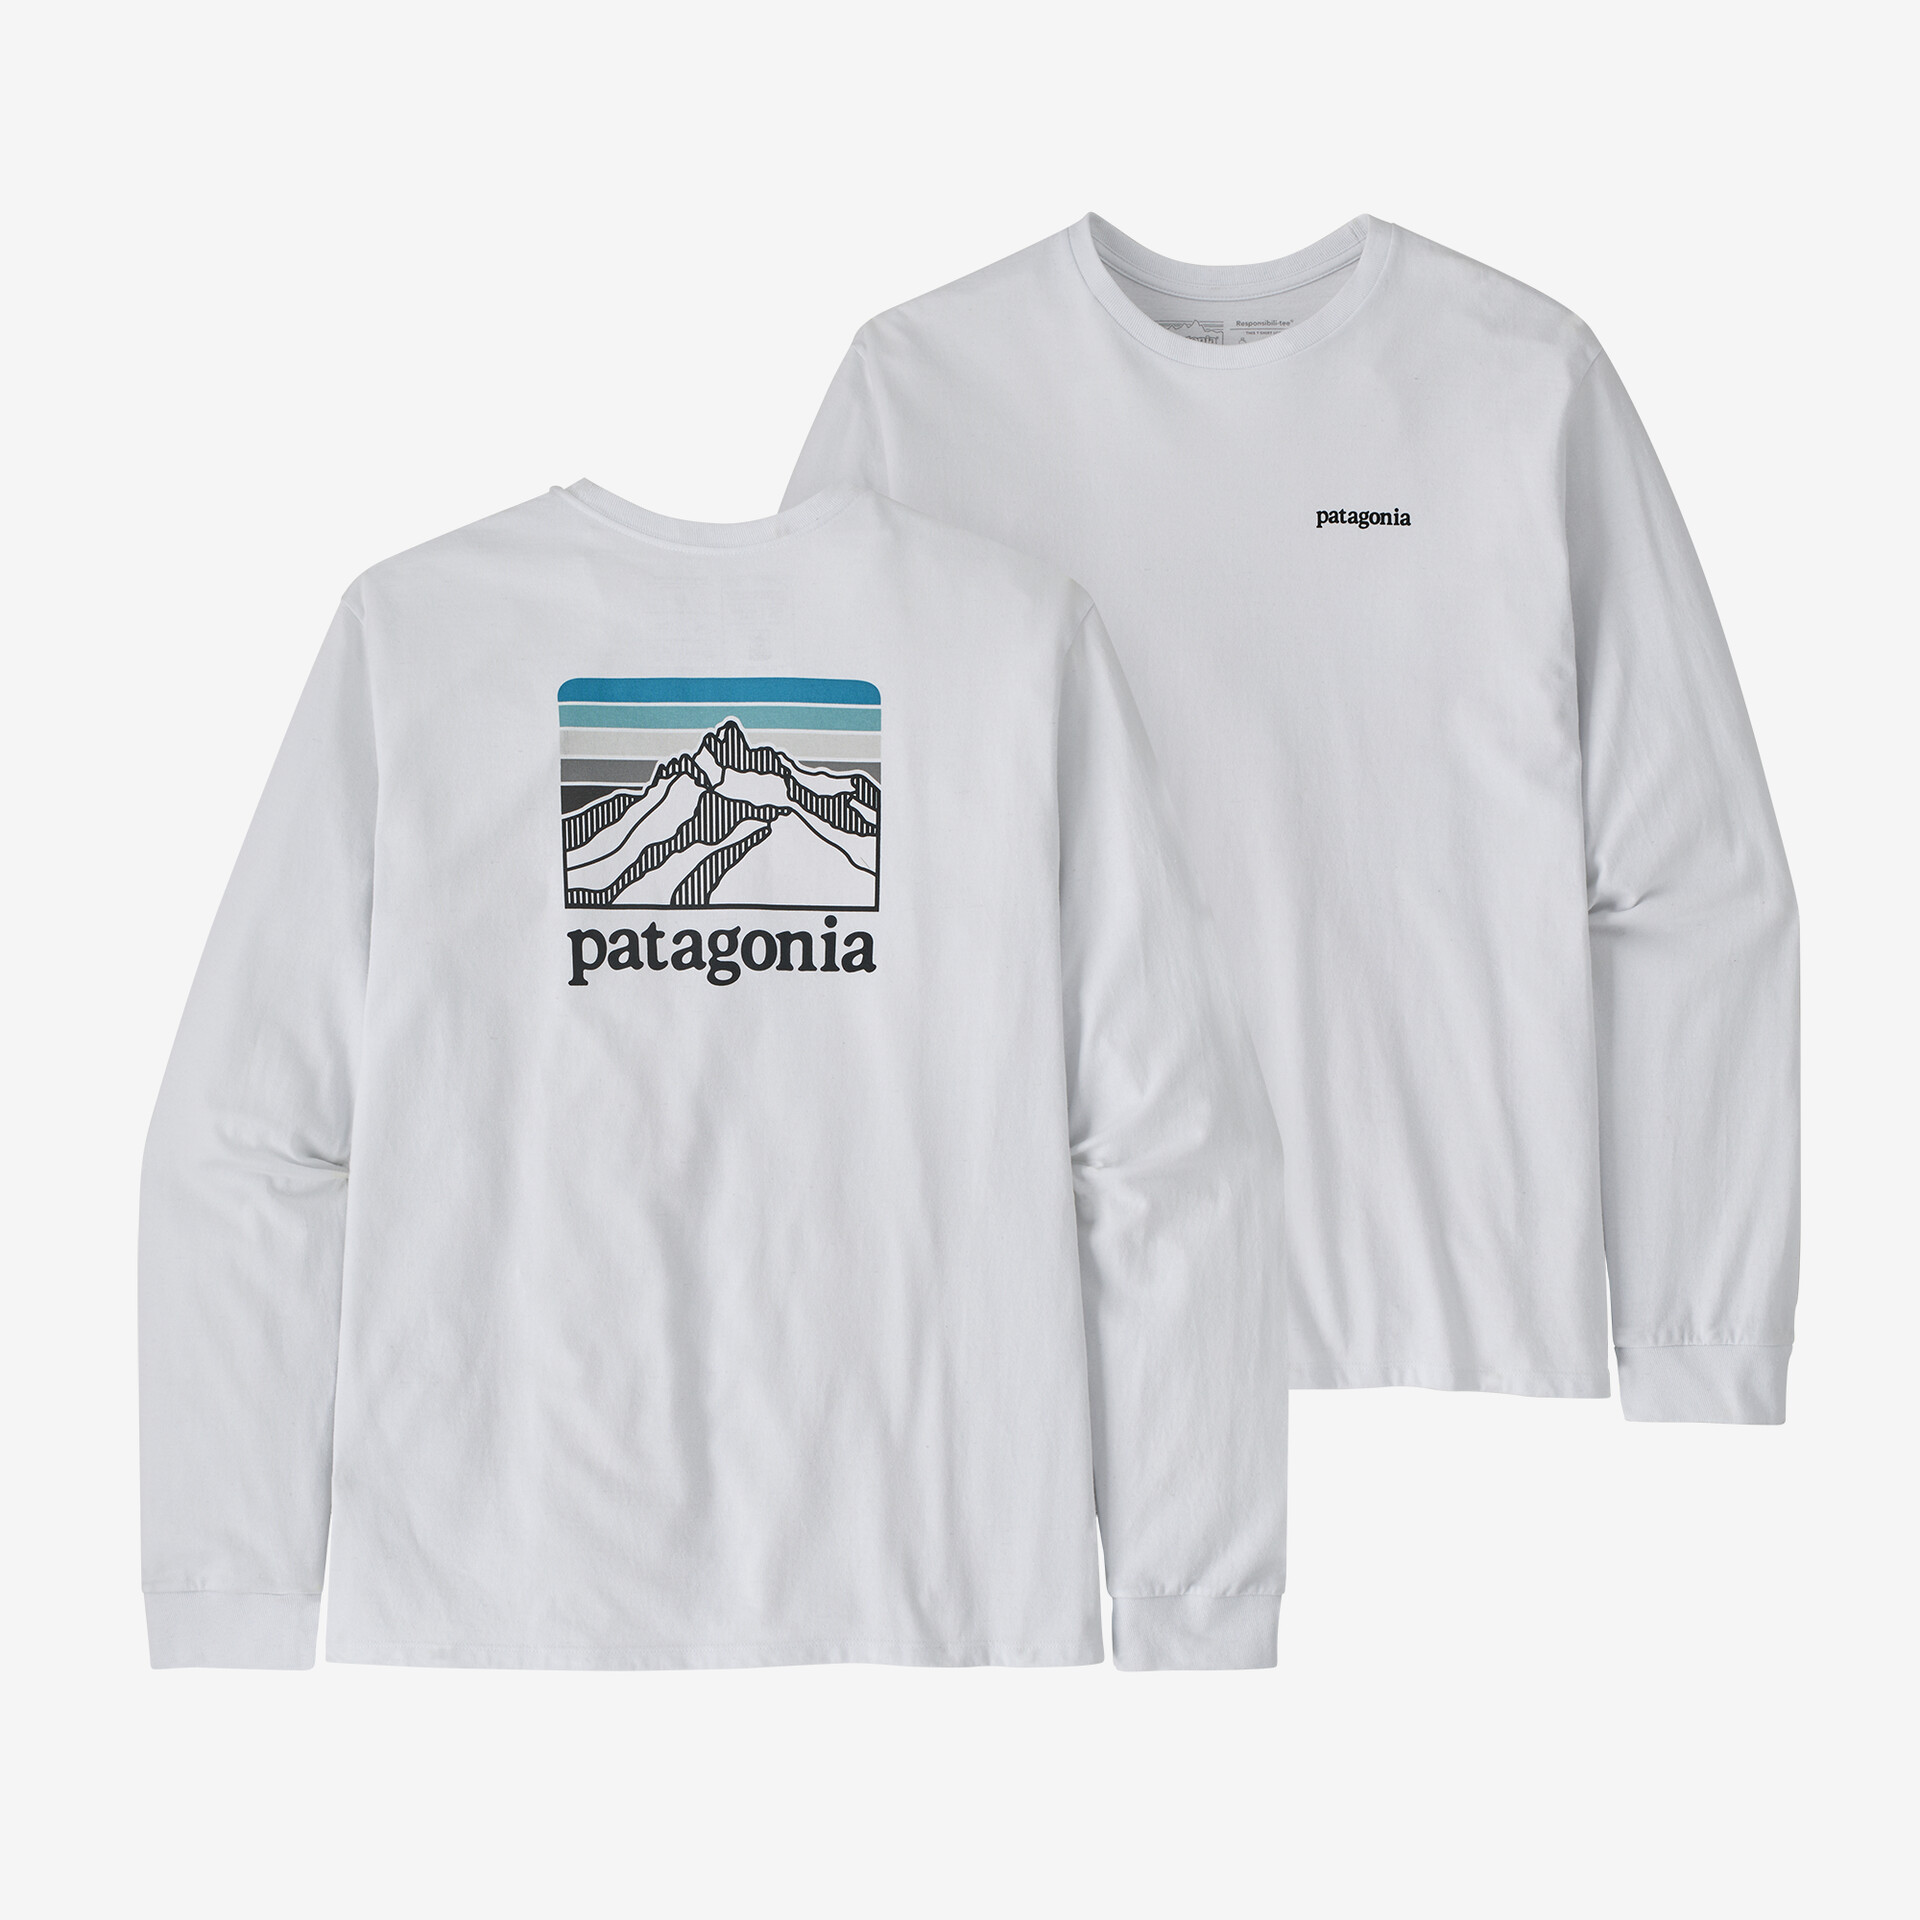 Мужская футболка с длинными рукавами и логотипом Ridge Responsibili-Tee Patagonia, белый